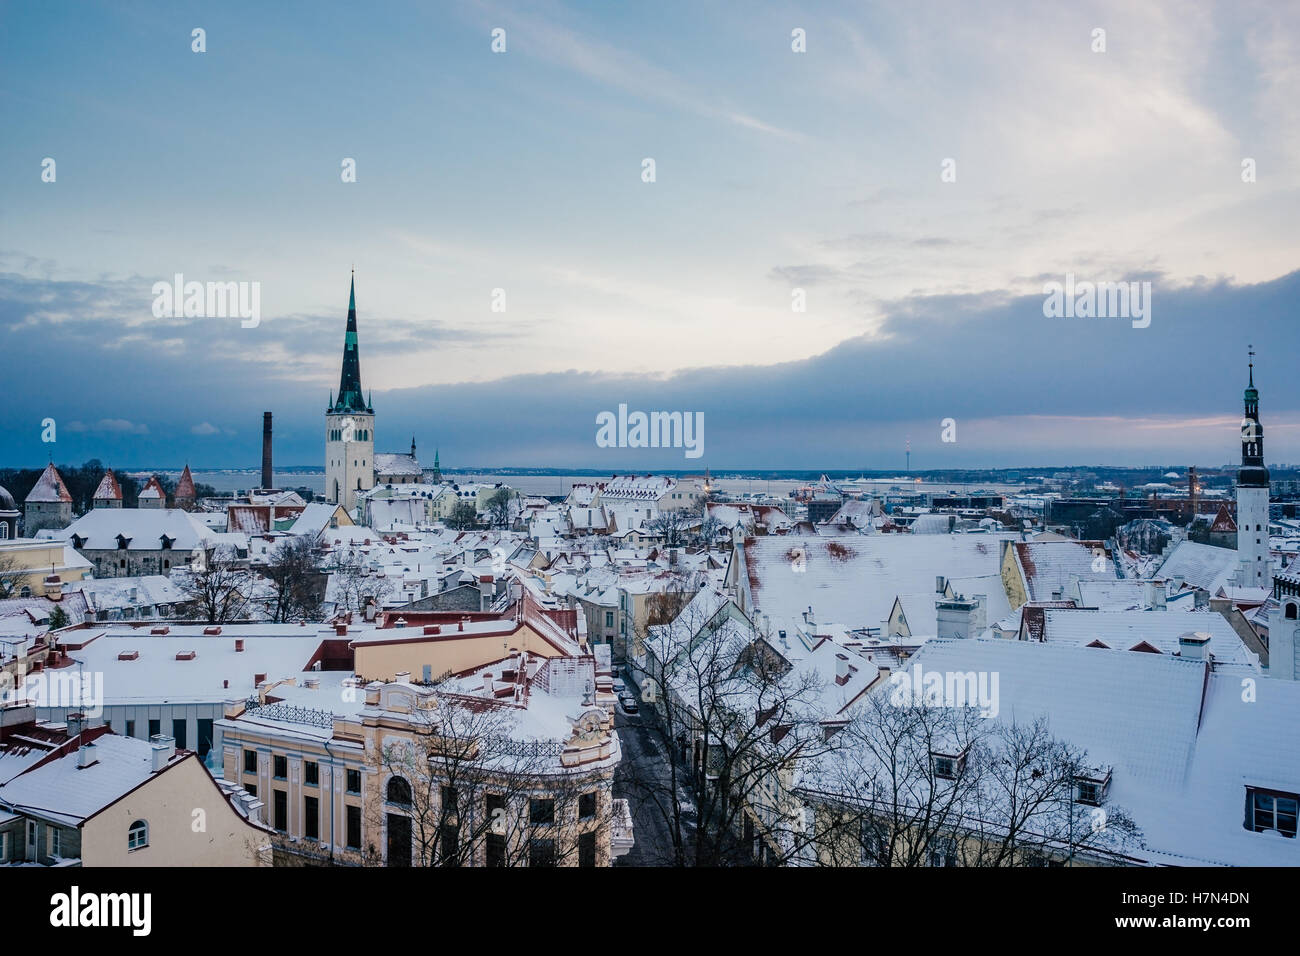 Winter cityscape of Tallinn old town by sunrise, Estonia Stock Photo